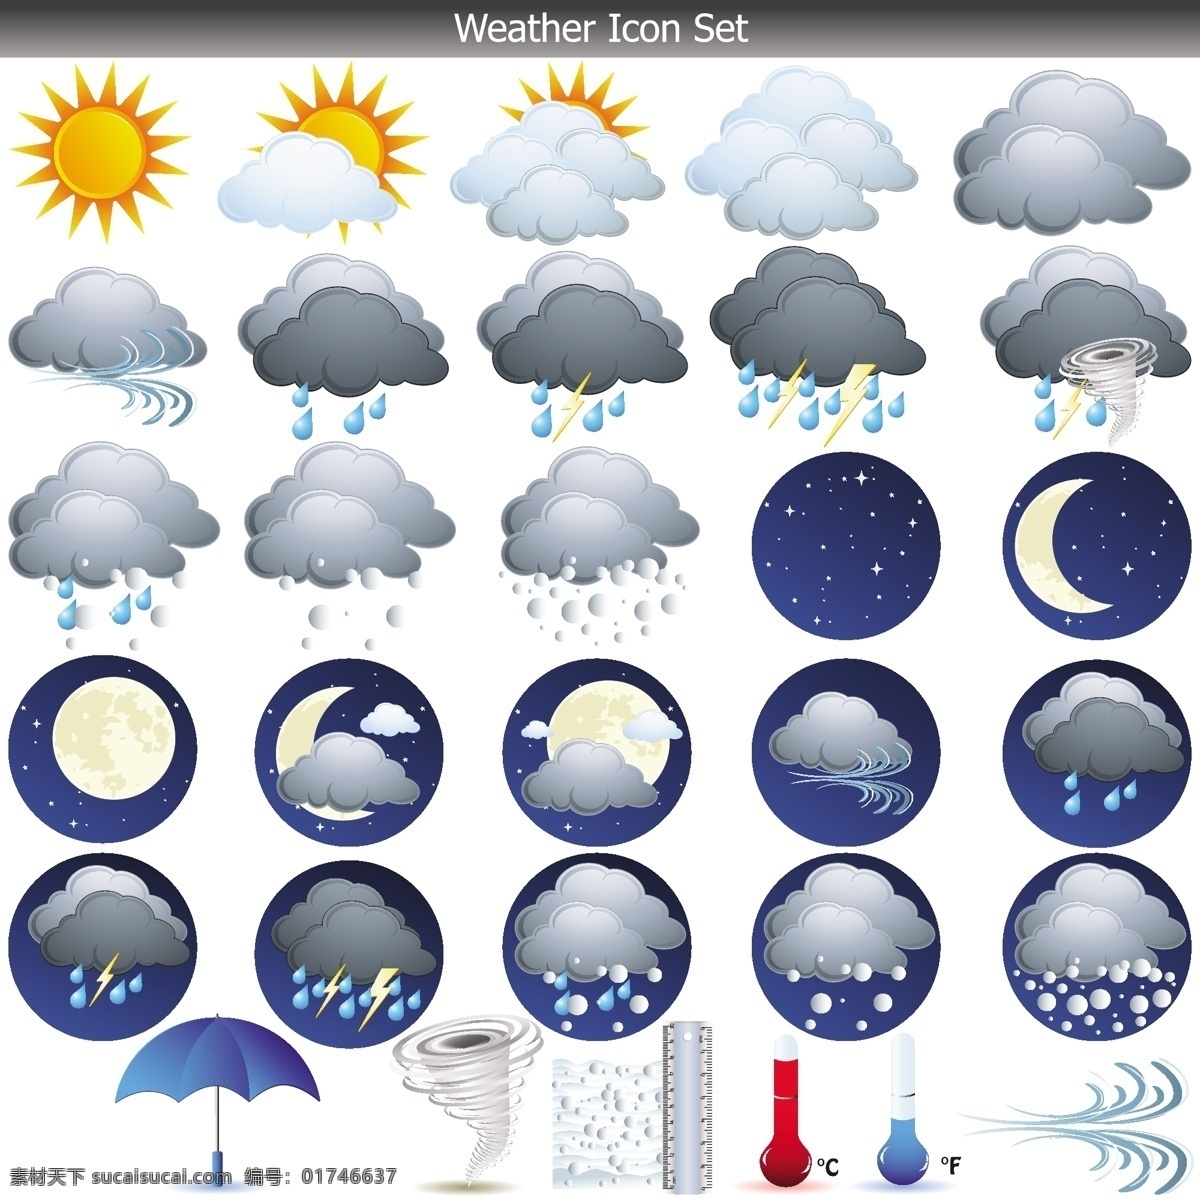 圆形 天气 app 应用 图标 矢量图 矢量图标 手机app 天气图标 矢量 手机 app图标